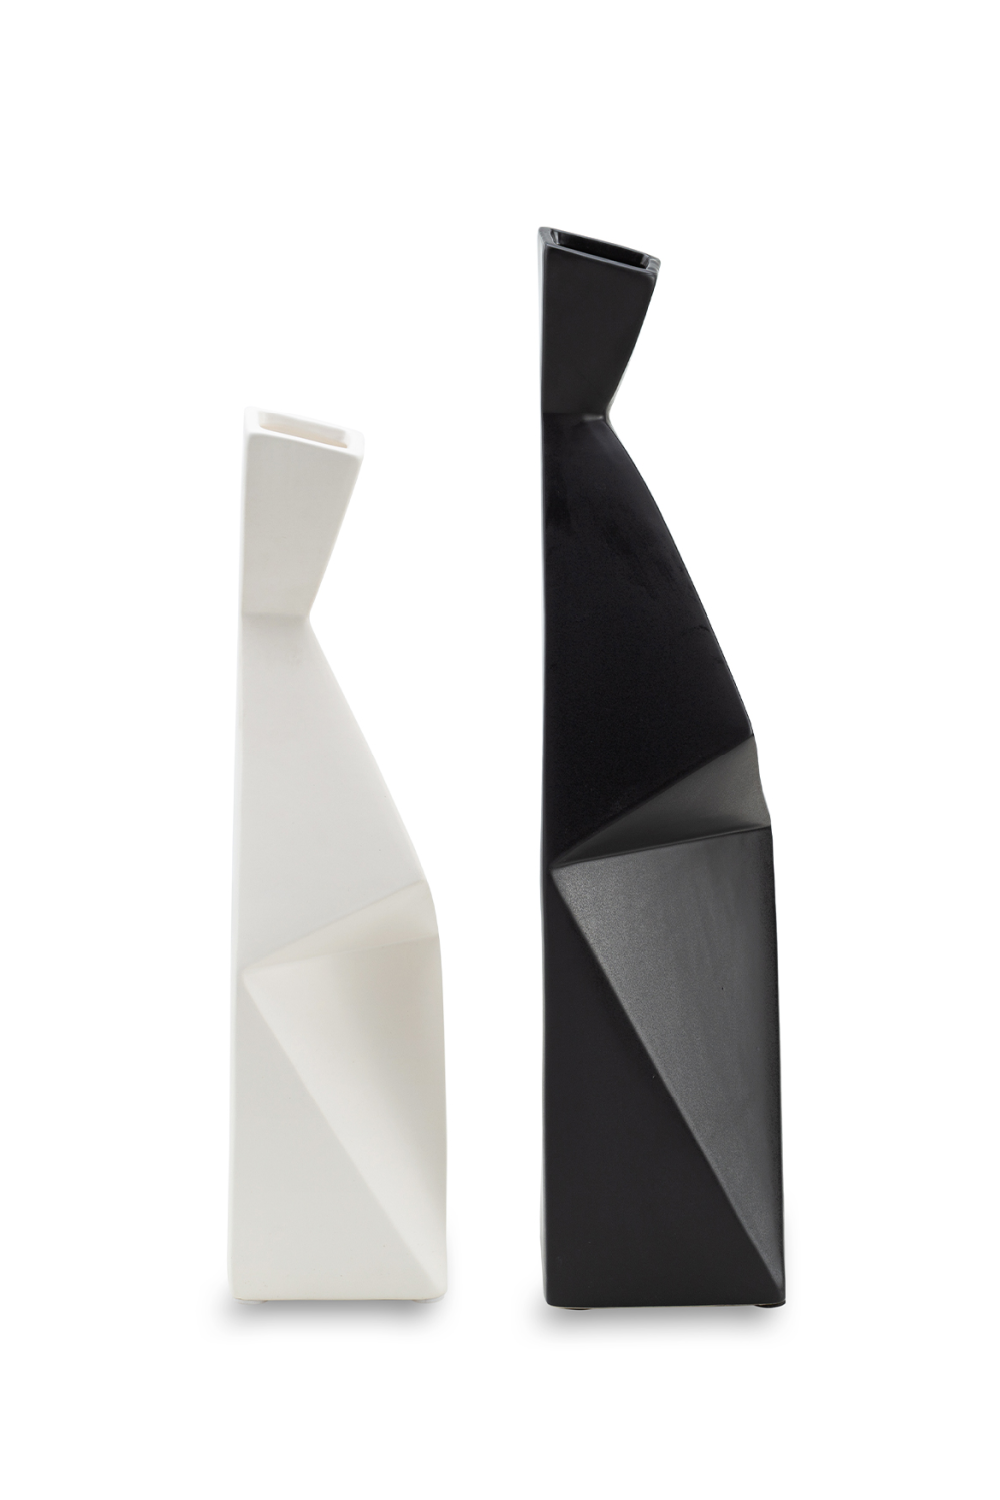 Modern Ceramic Vase S | Liang & Eimil Allen | OROA.com